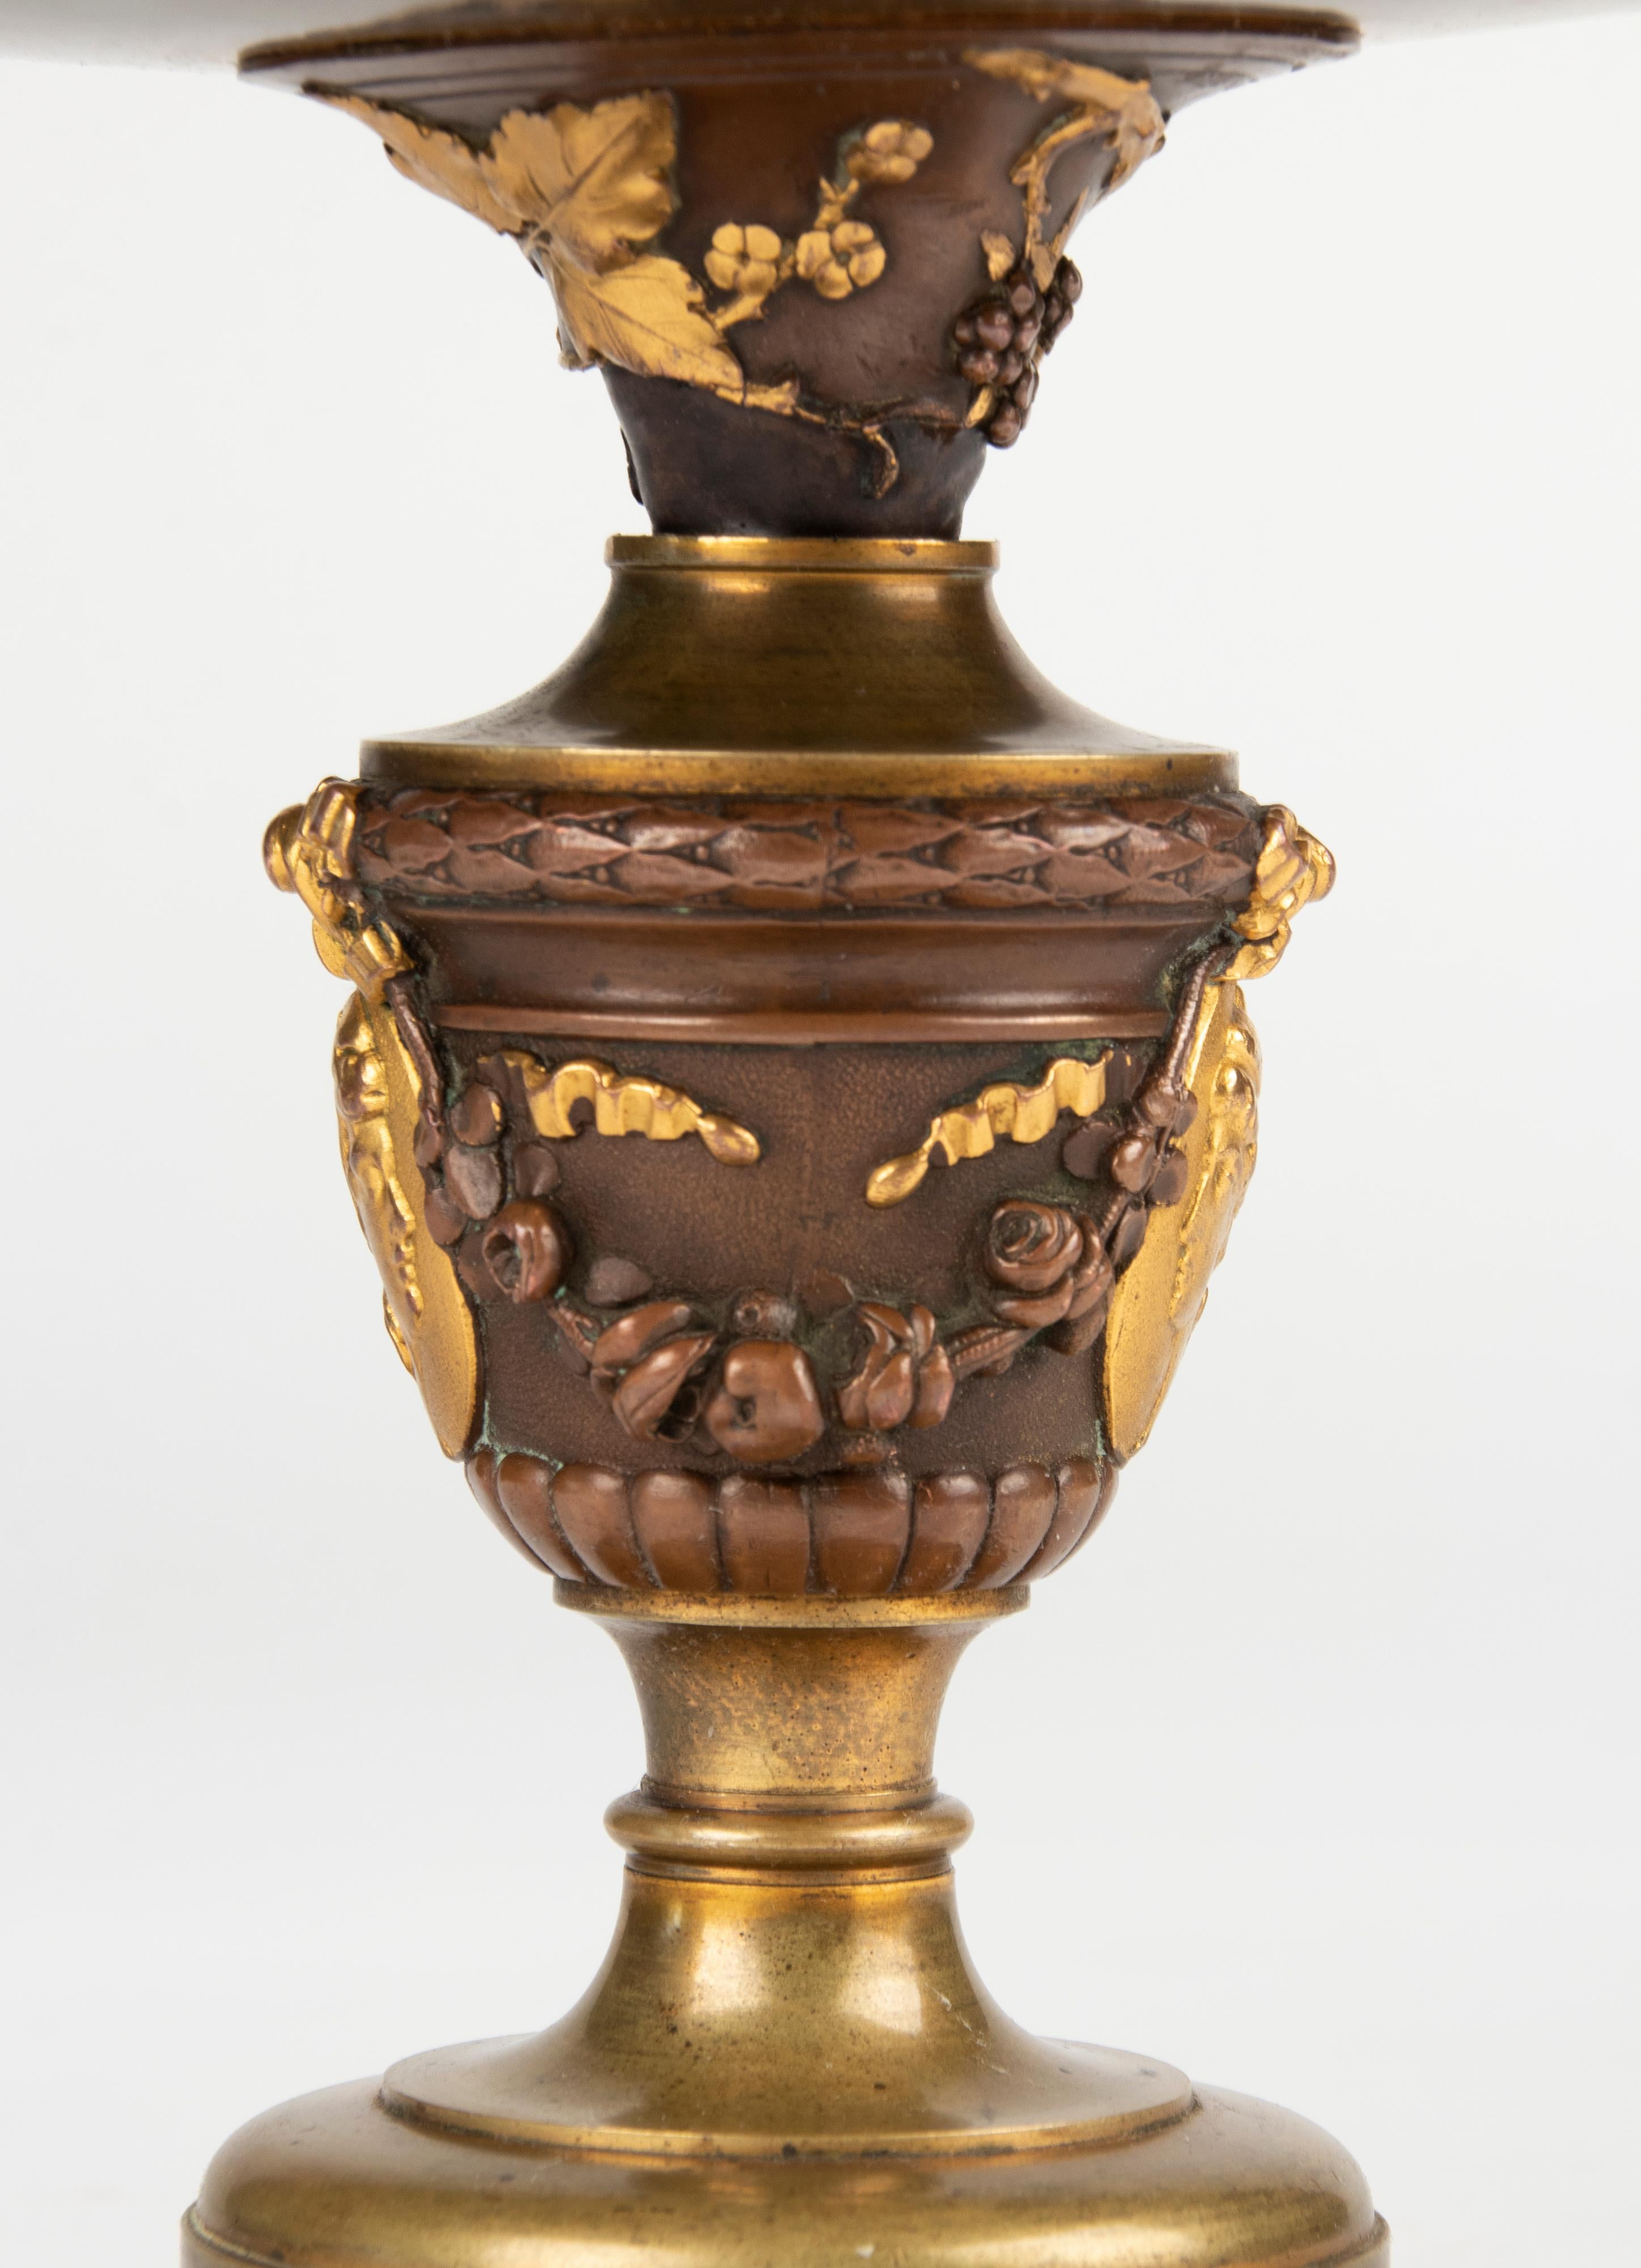 Schöne antike Bronze tazza, eine Schale auf einem hohen Fuß. Die Schale ist mit zierlichen Blumen verziert und stammt aus dem späten 19. Jahrhundert. Mehrfarbige Patina.
Die Schale ist mit Oudry signiert, einem bekannten französischen Designer von